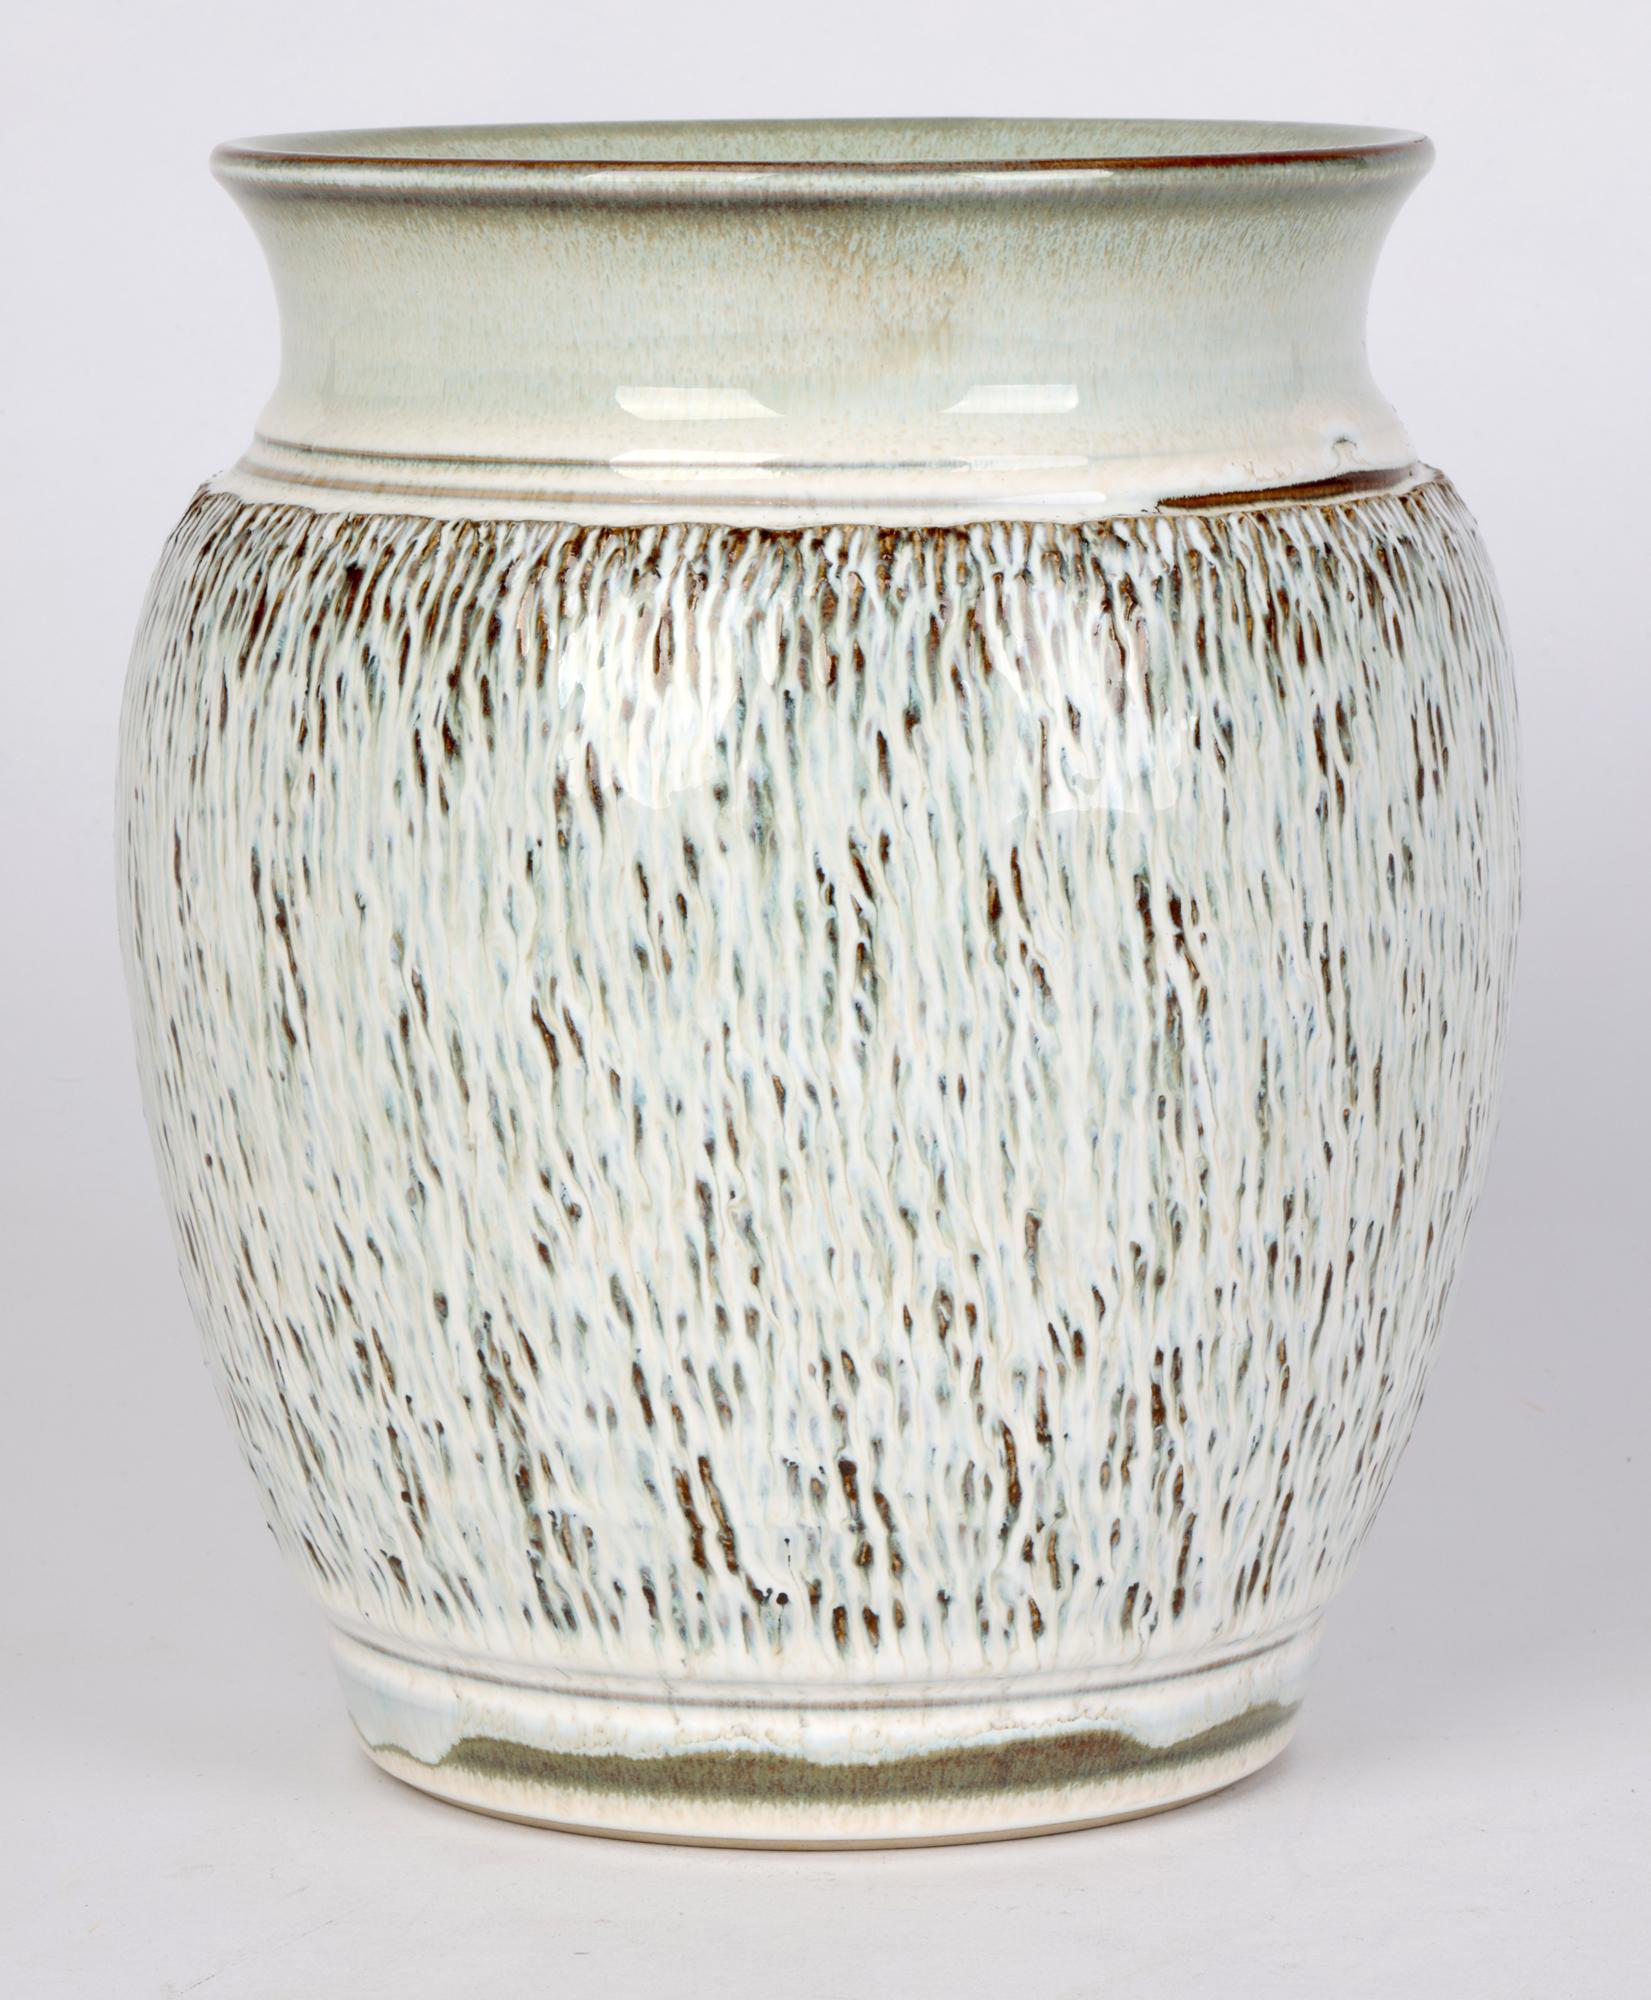 Bauhaus Inspired German Stoneware Vase   For Sale 1